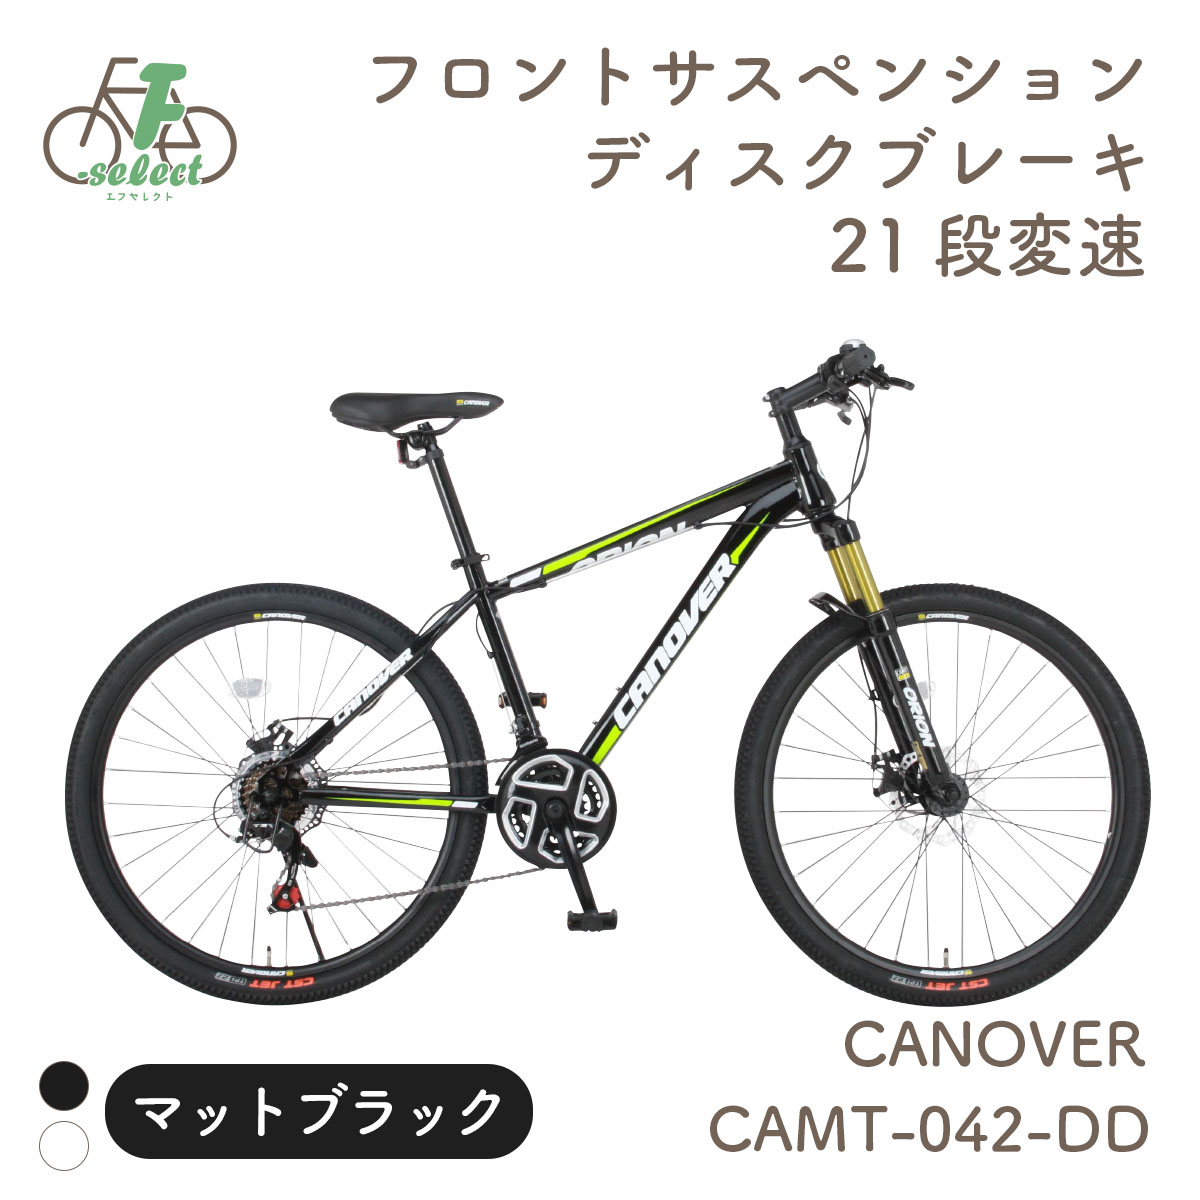 マウンテンバイク 自転車 MTB 26インチ 完成品出荷 / 置き配可能 21段変速 ディスクブレーキ Fサス カノーバー オリオン CANOVER  CAMT-042-DD ORION